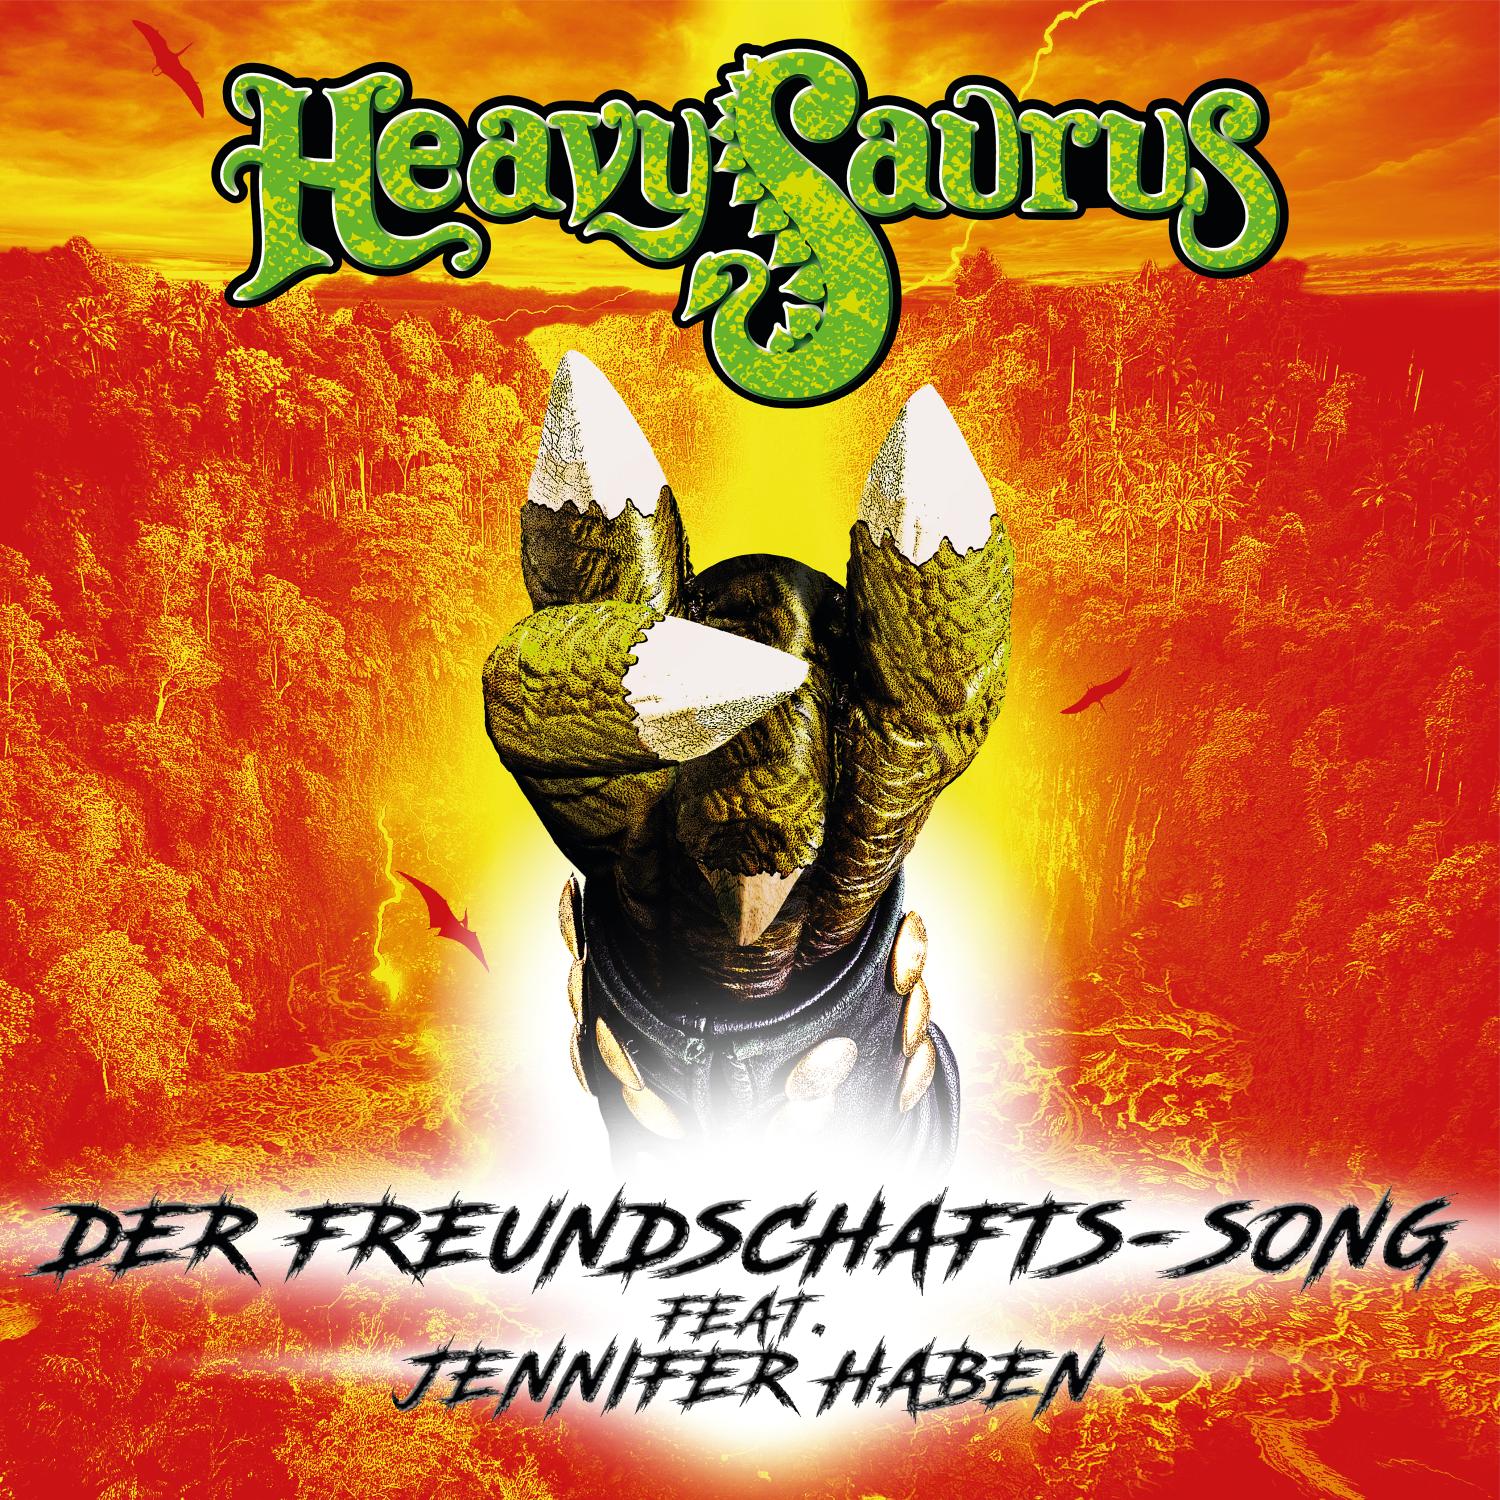 Heavysaurus: Der Freundschafts-Song feat. Jennifer Haben